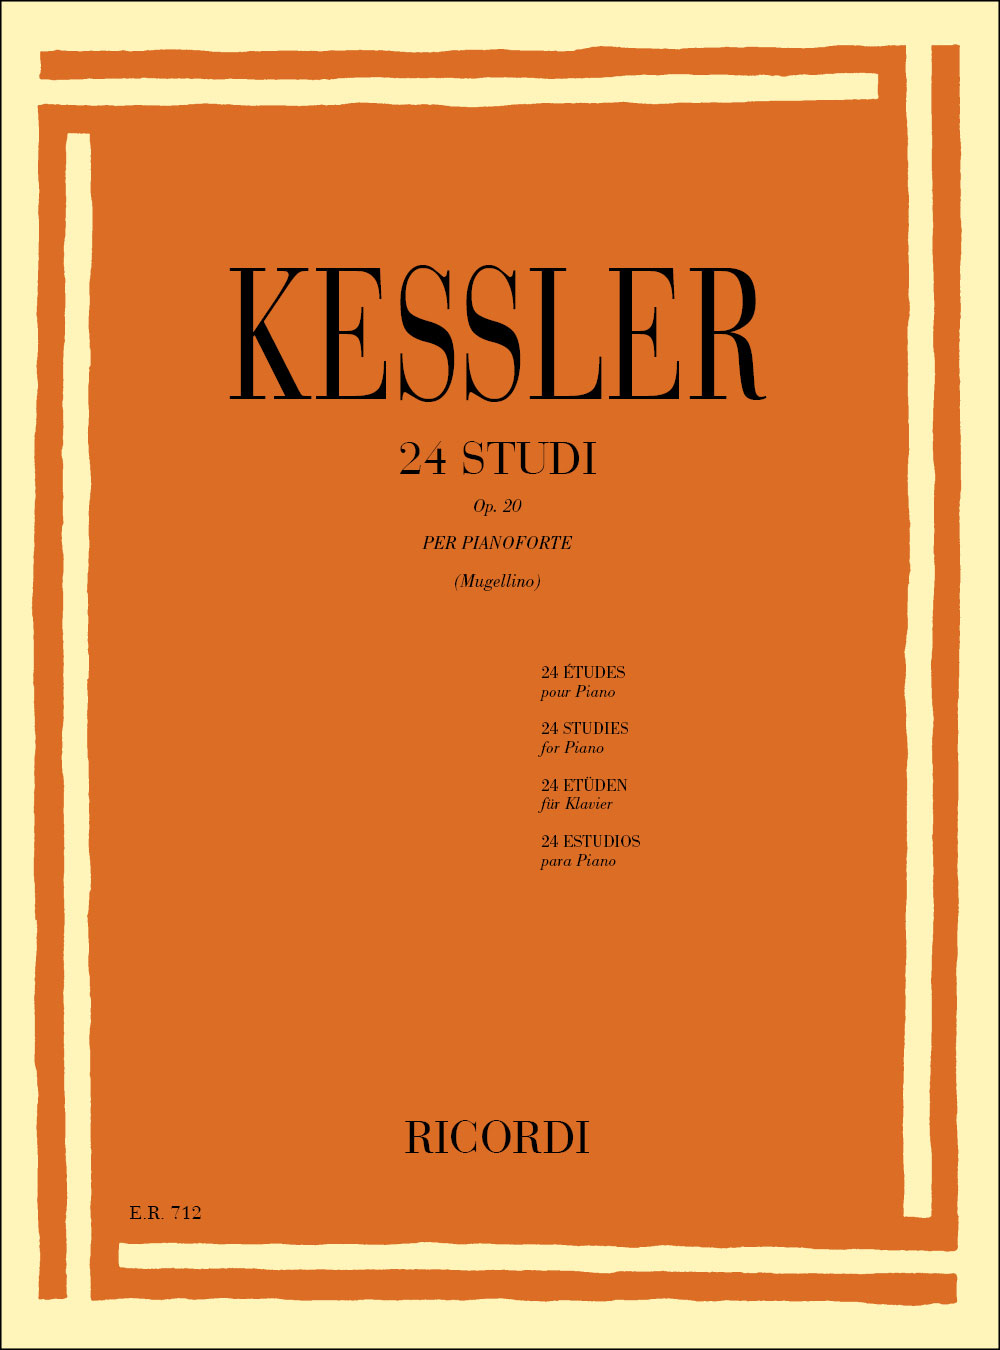 RICORDI KESSLER J.C. - 24 STUDI OP. 20 PER PIANOFORTE